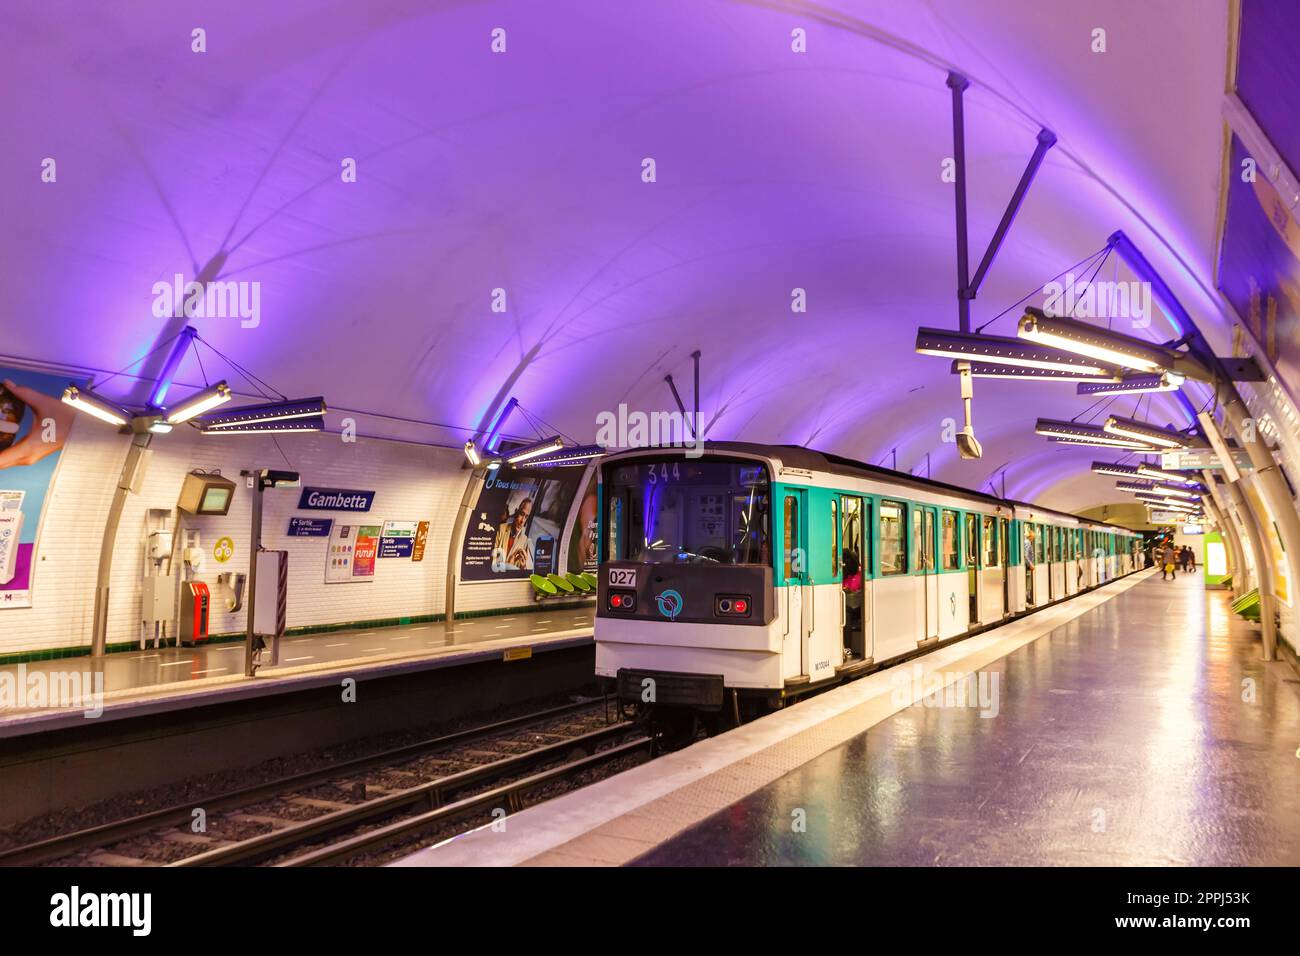 Métro Paris station de métro Gambetta transports publics en France Banque D'Images